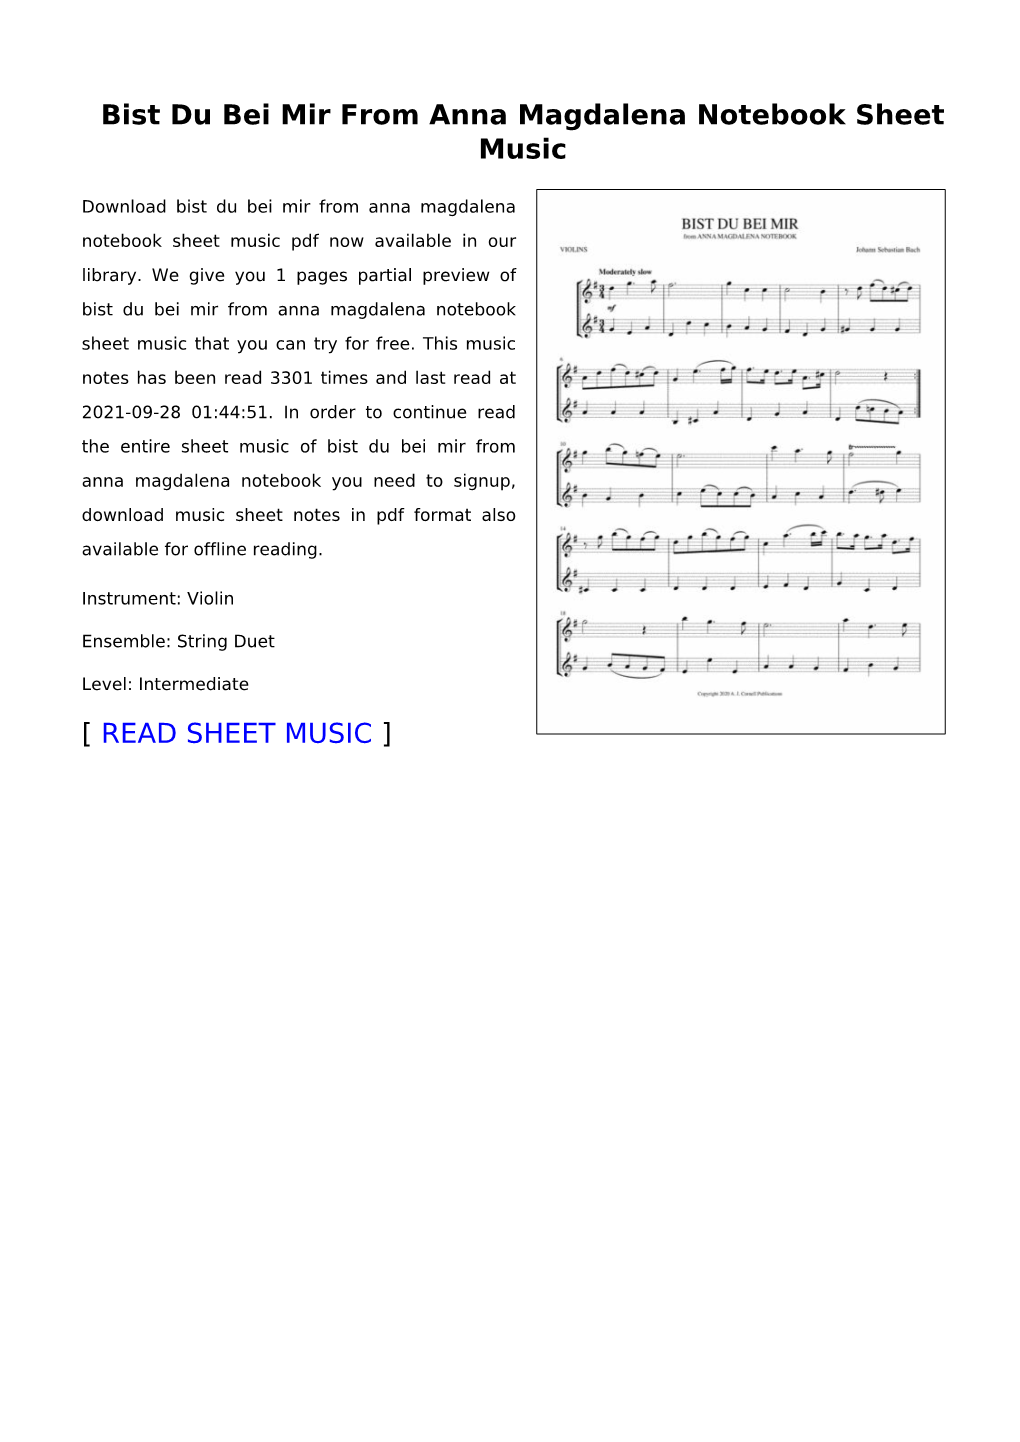 Bist Du Bei Mir from Anna Magdalena Notebook Sheet Music